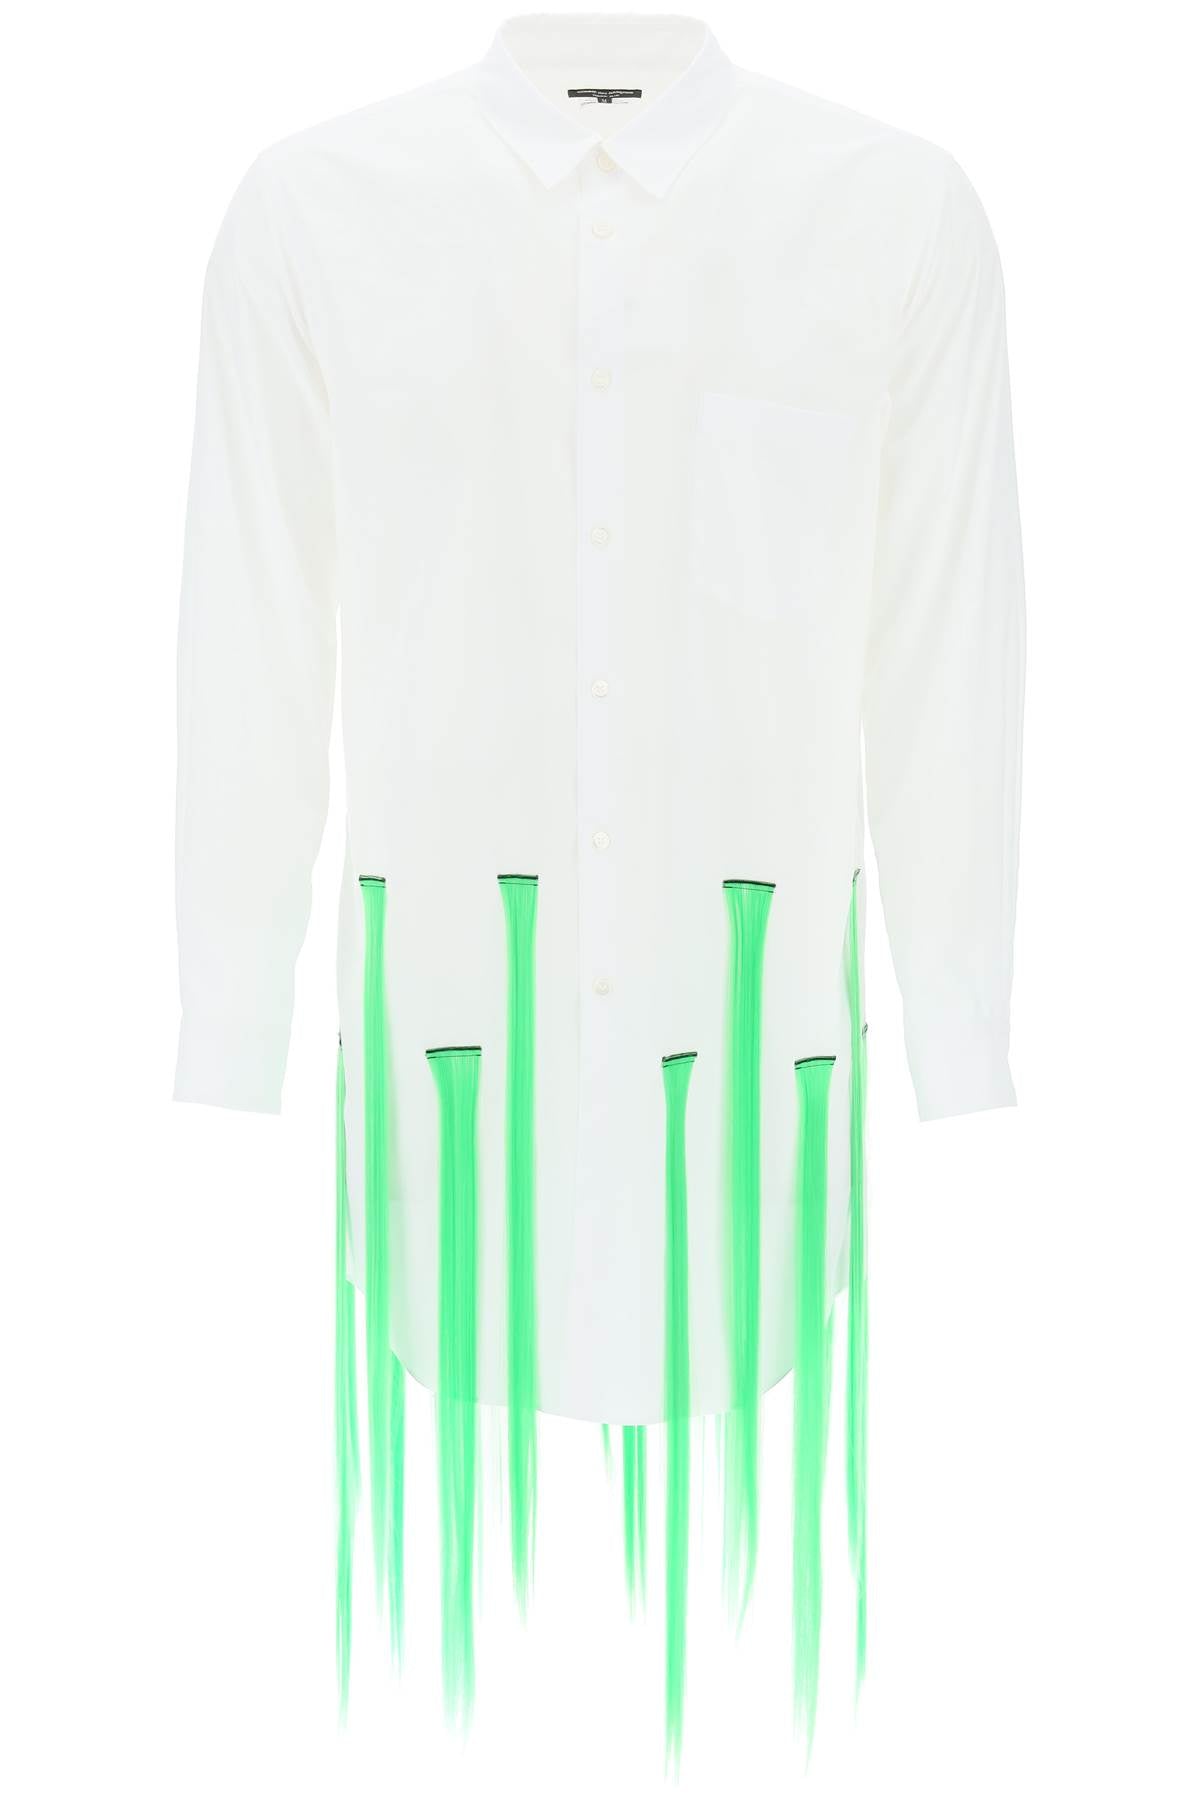 Shop Comme Des Garçons Homme Deux White Shirt With Contrasting Extensions